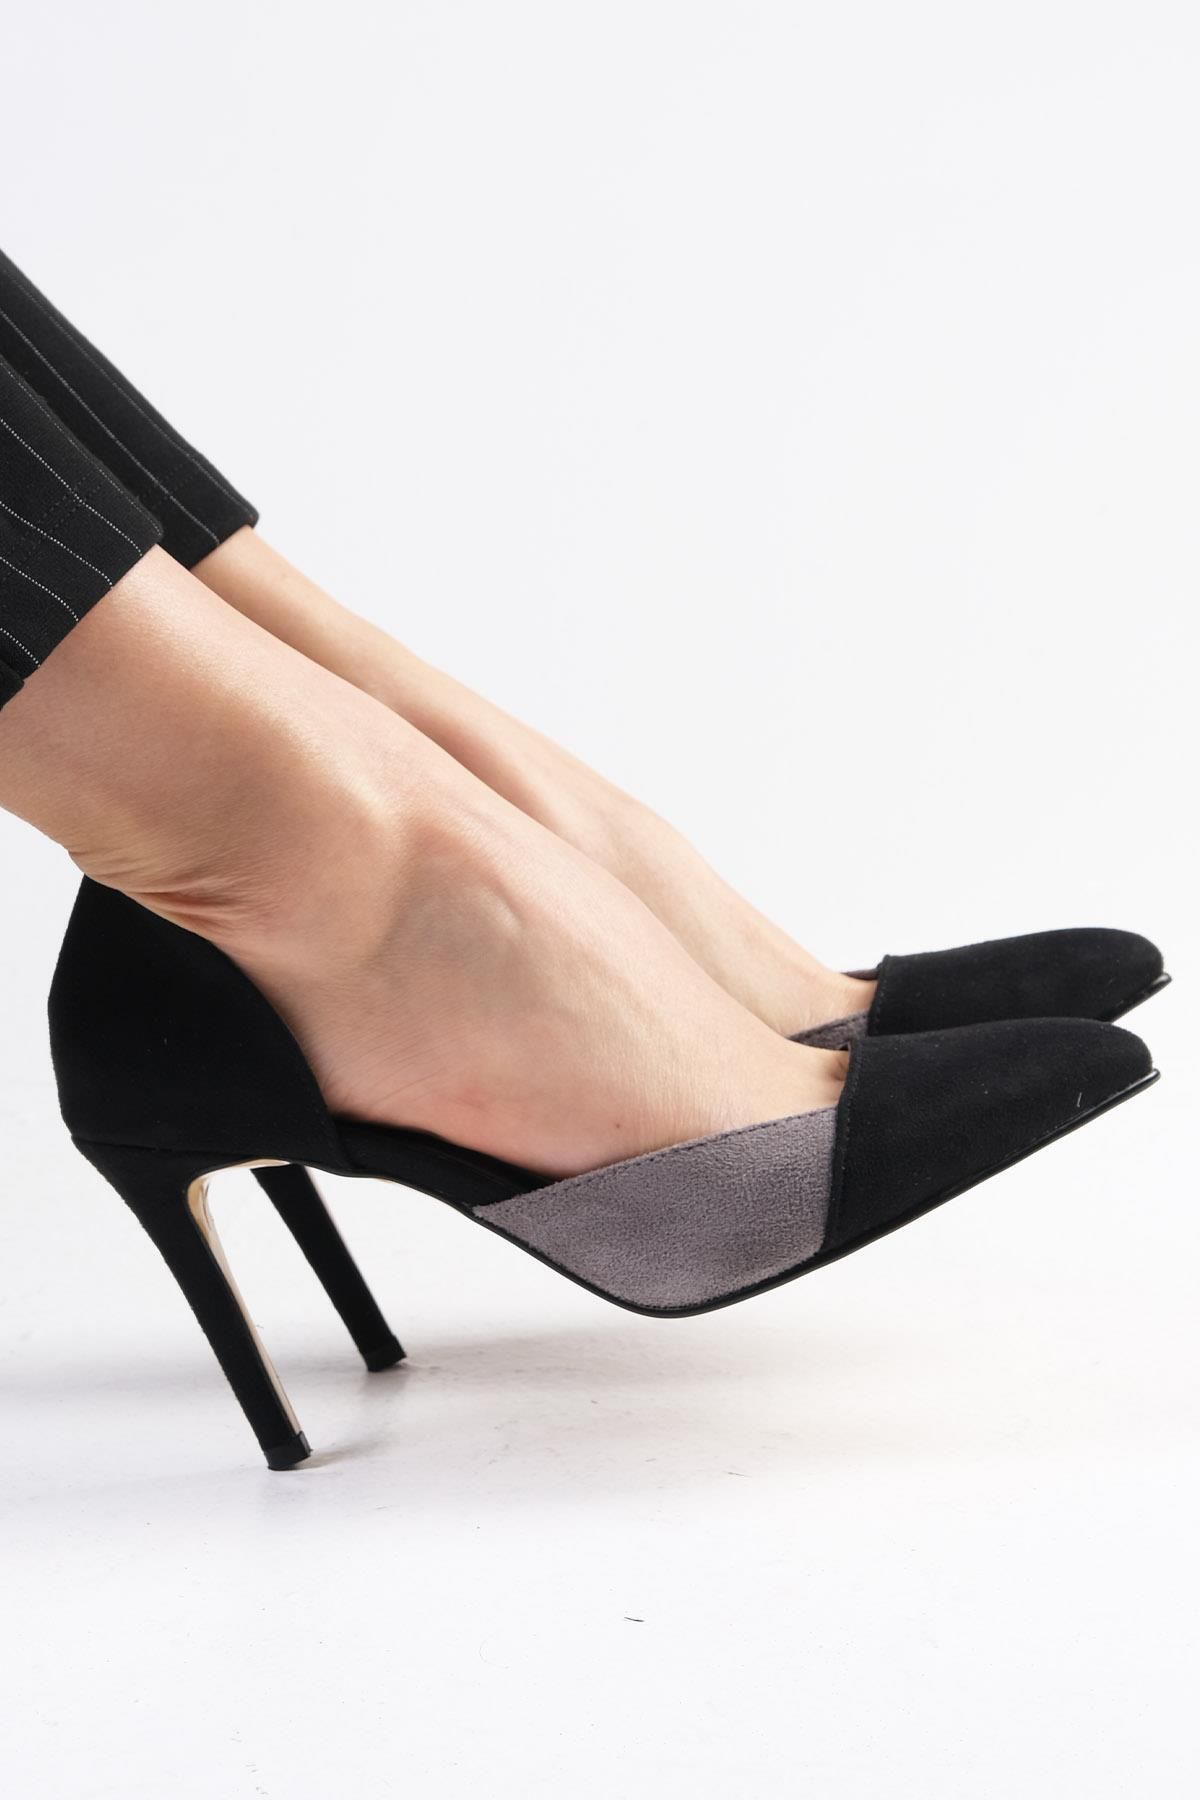 Mio Gusto Brien Siyah Ve Gri Renk Süet Renk Bloklu Kadın Stiletto Topuklu Ayakkabı